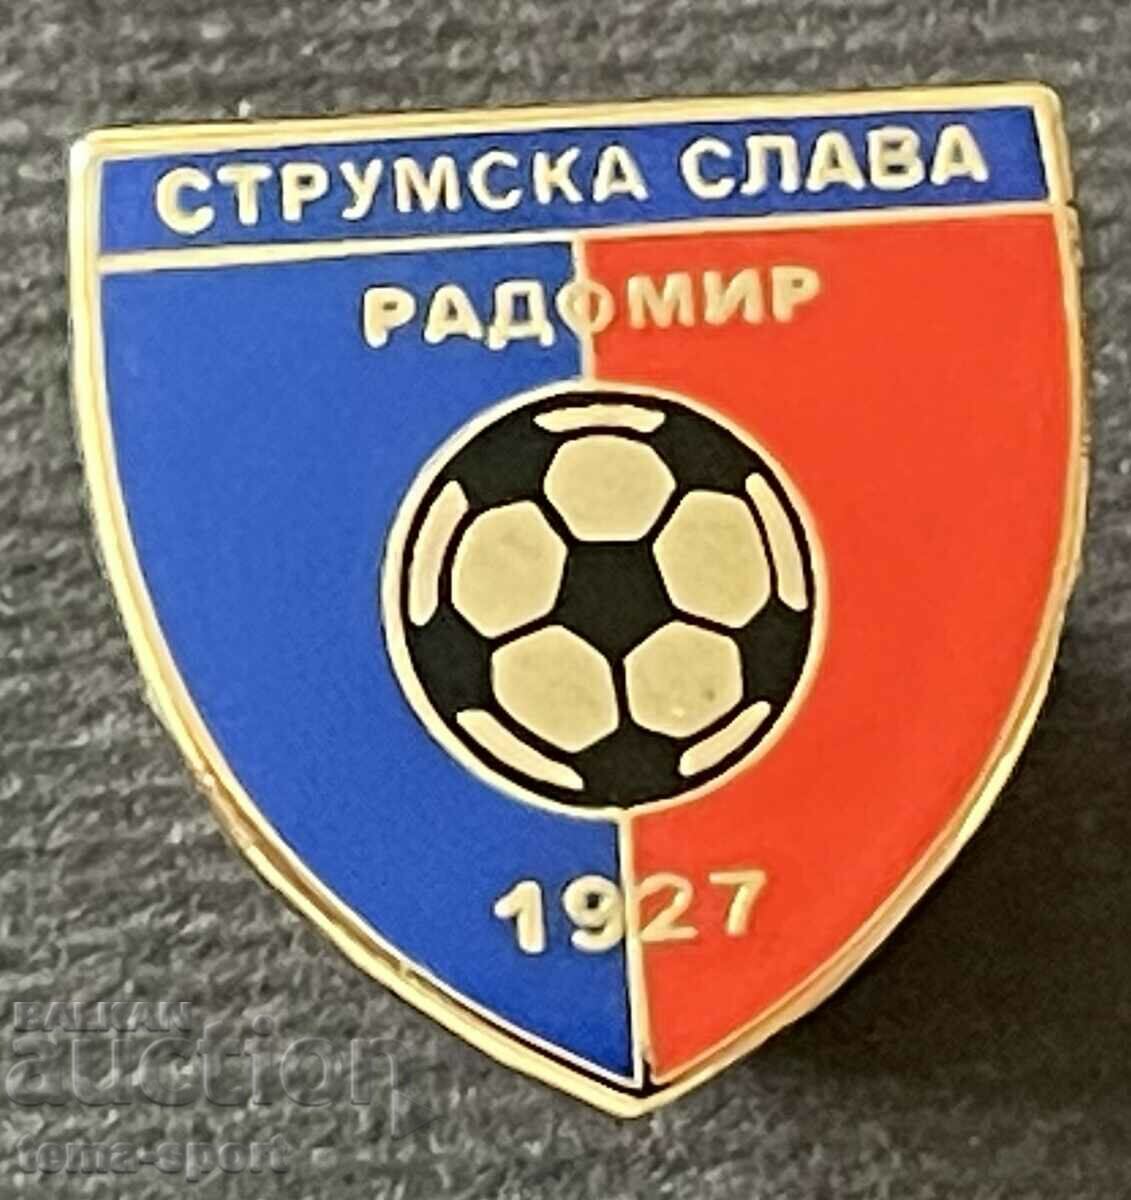 727 Βουλγαρία υπογράψει Football Club Strumska Slava Radomir σμάλτο